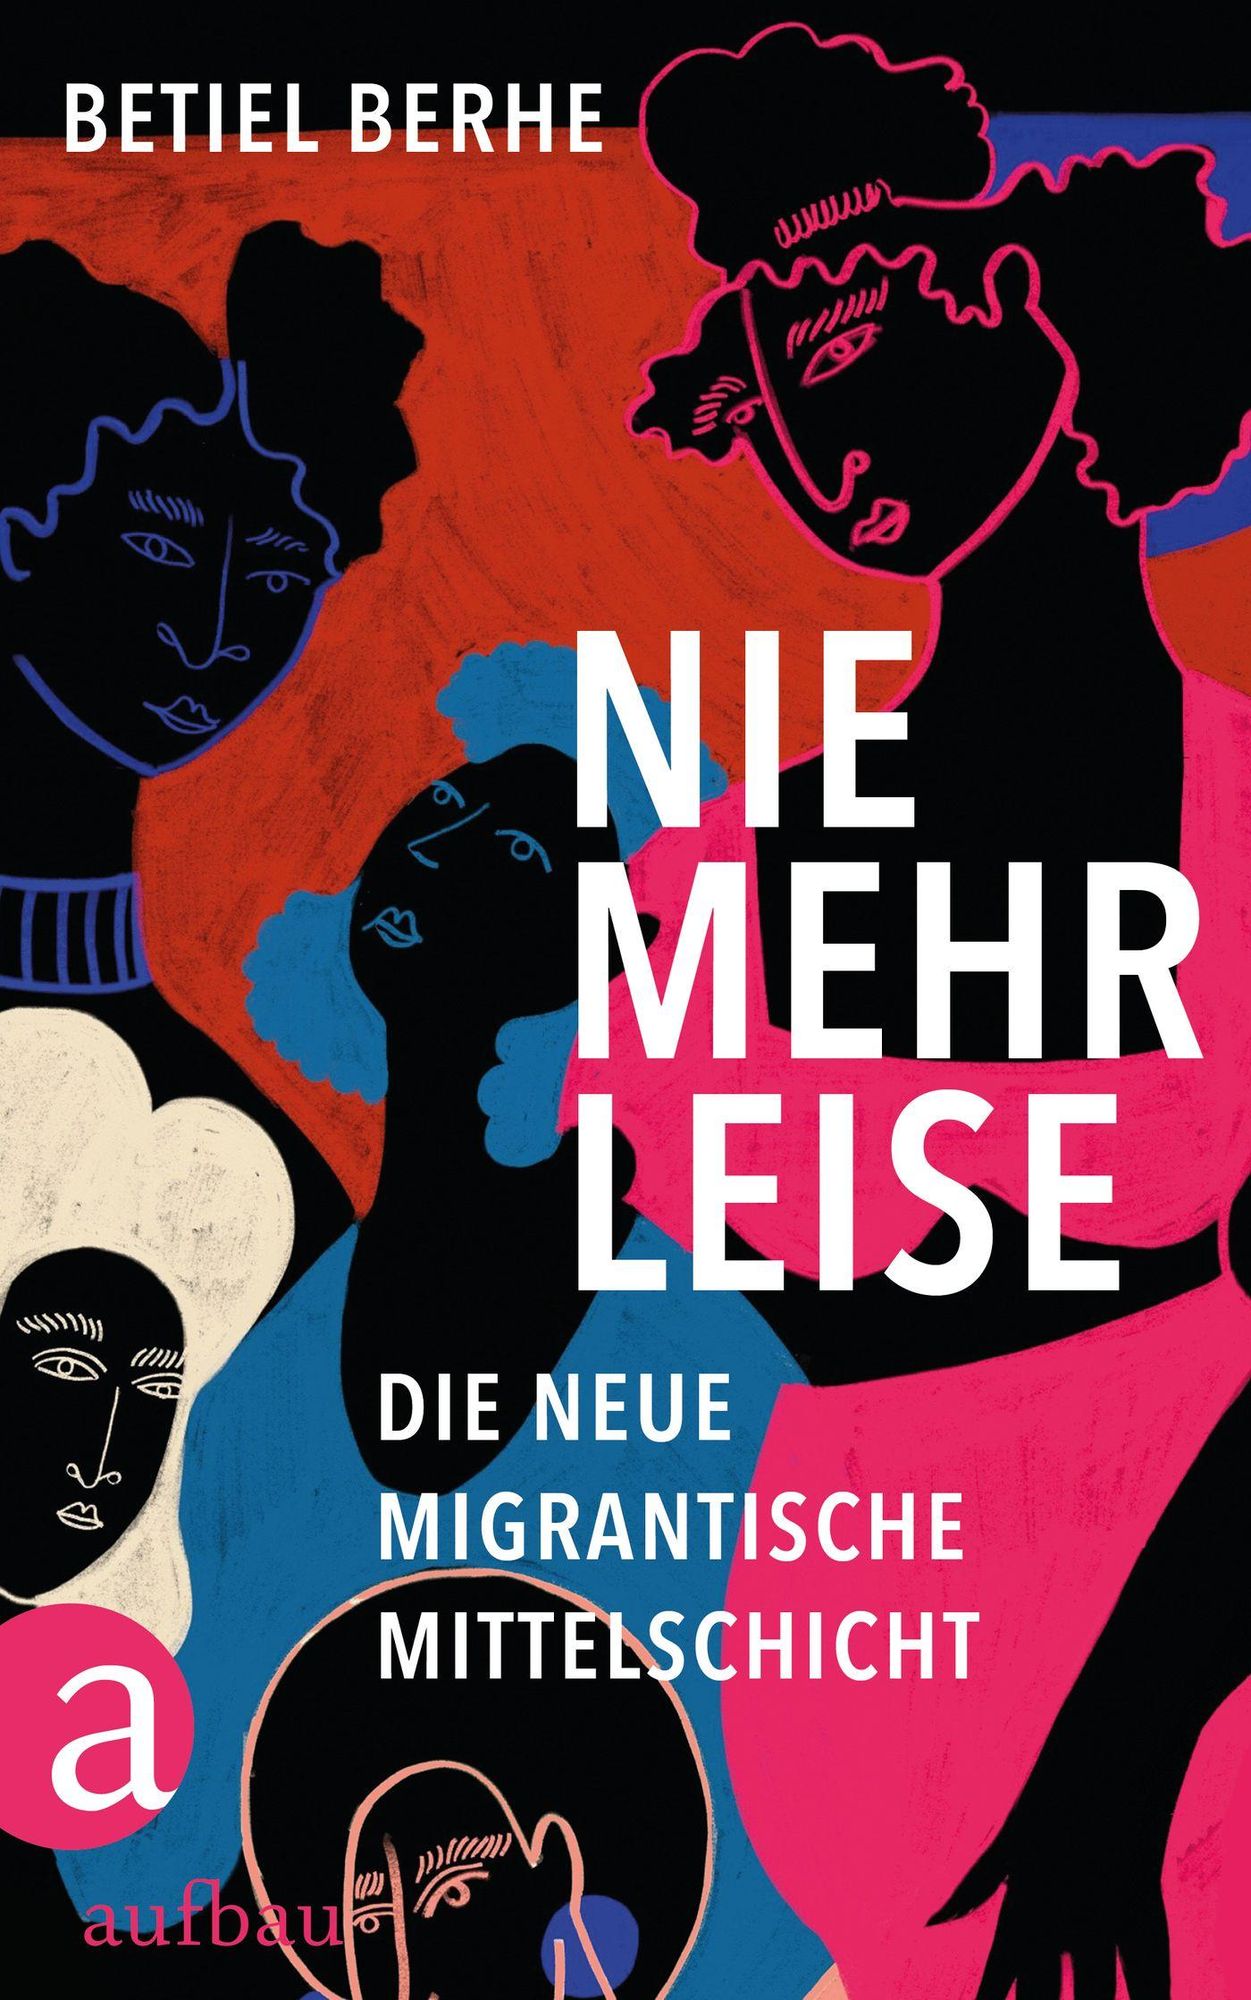 Buchcover von Betiel Berhes Nie mehr leise die neue migrantische Mittelschicht